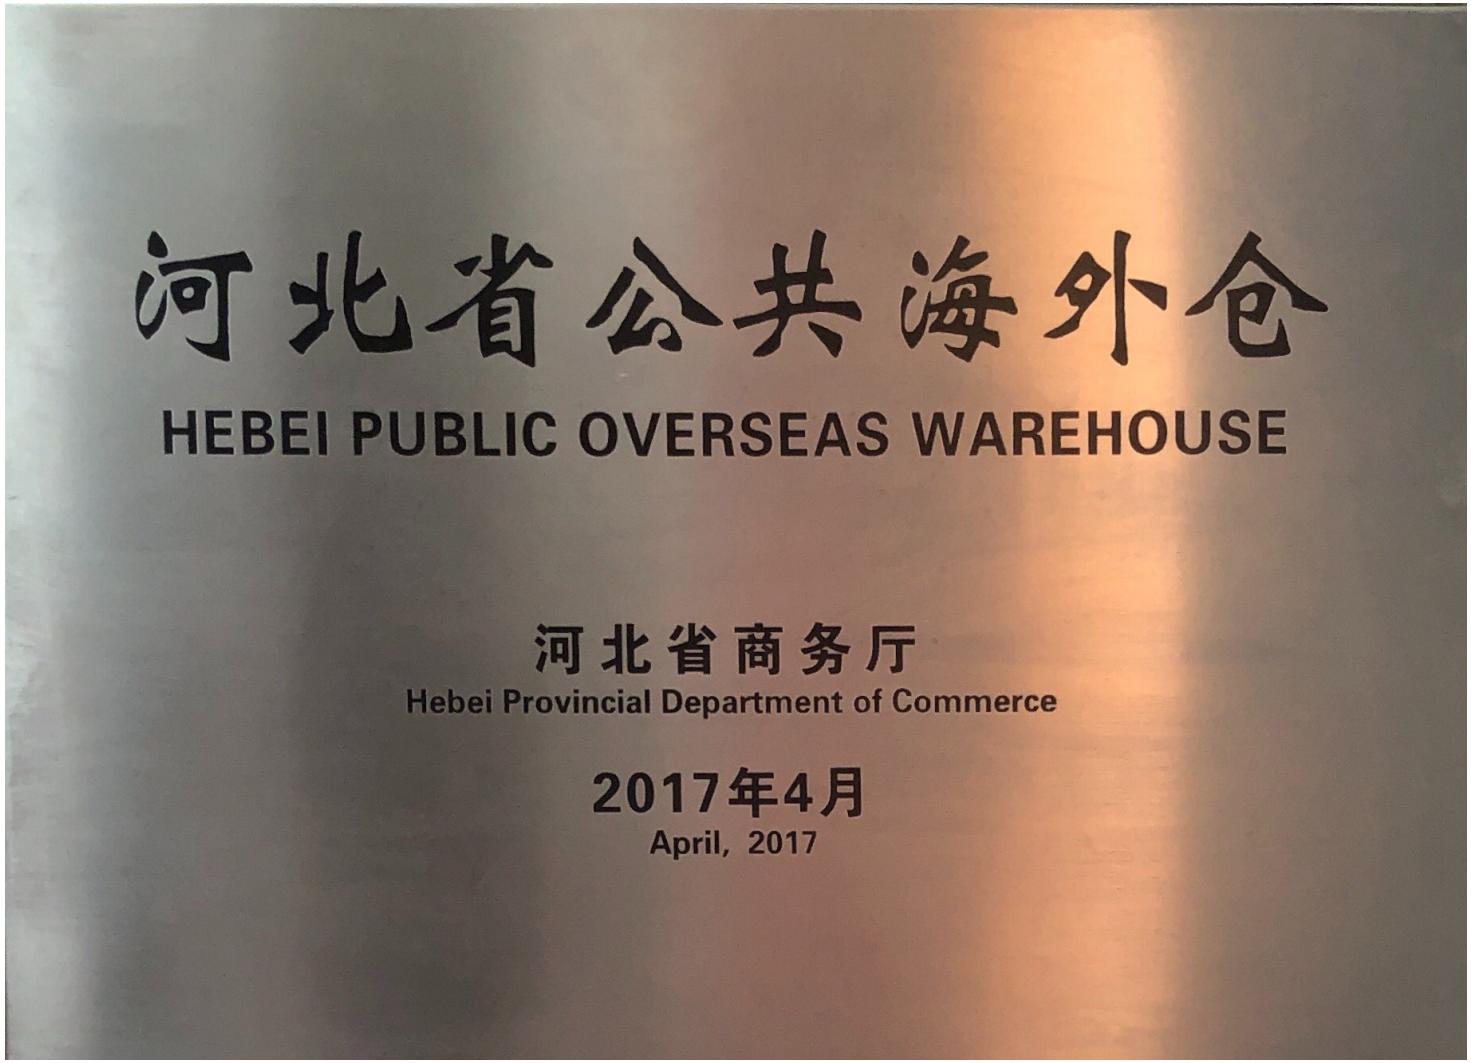 Public Overseas Warehouse Certificate